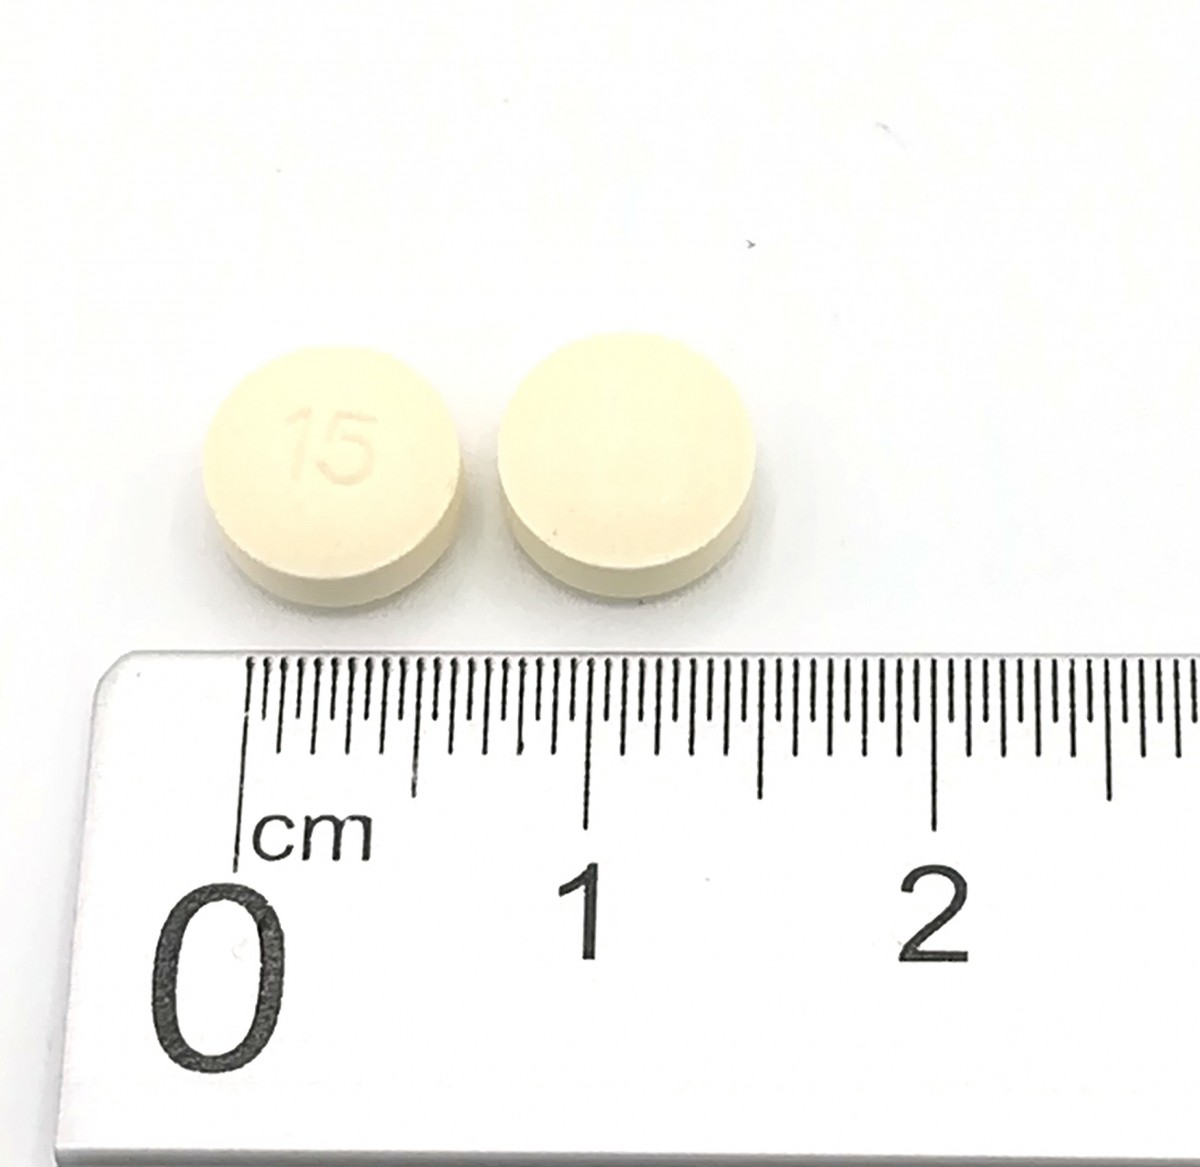 ARIPIPRAZOL NORMON 15 MG COMPRIMIDOS EFG , 100 comprimidos fotografía de la forma farmacéutica.